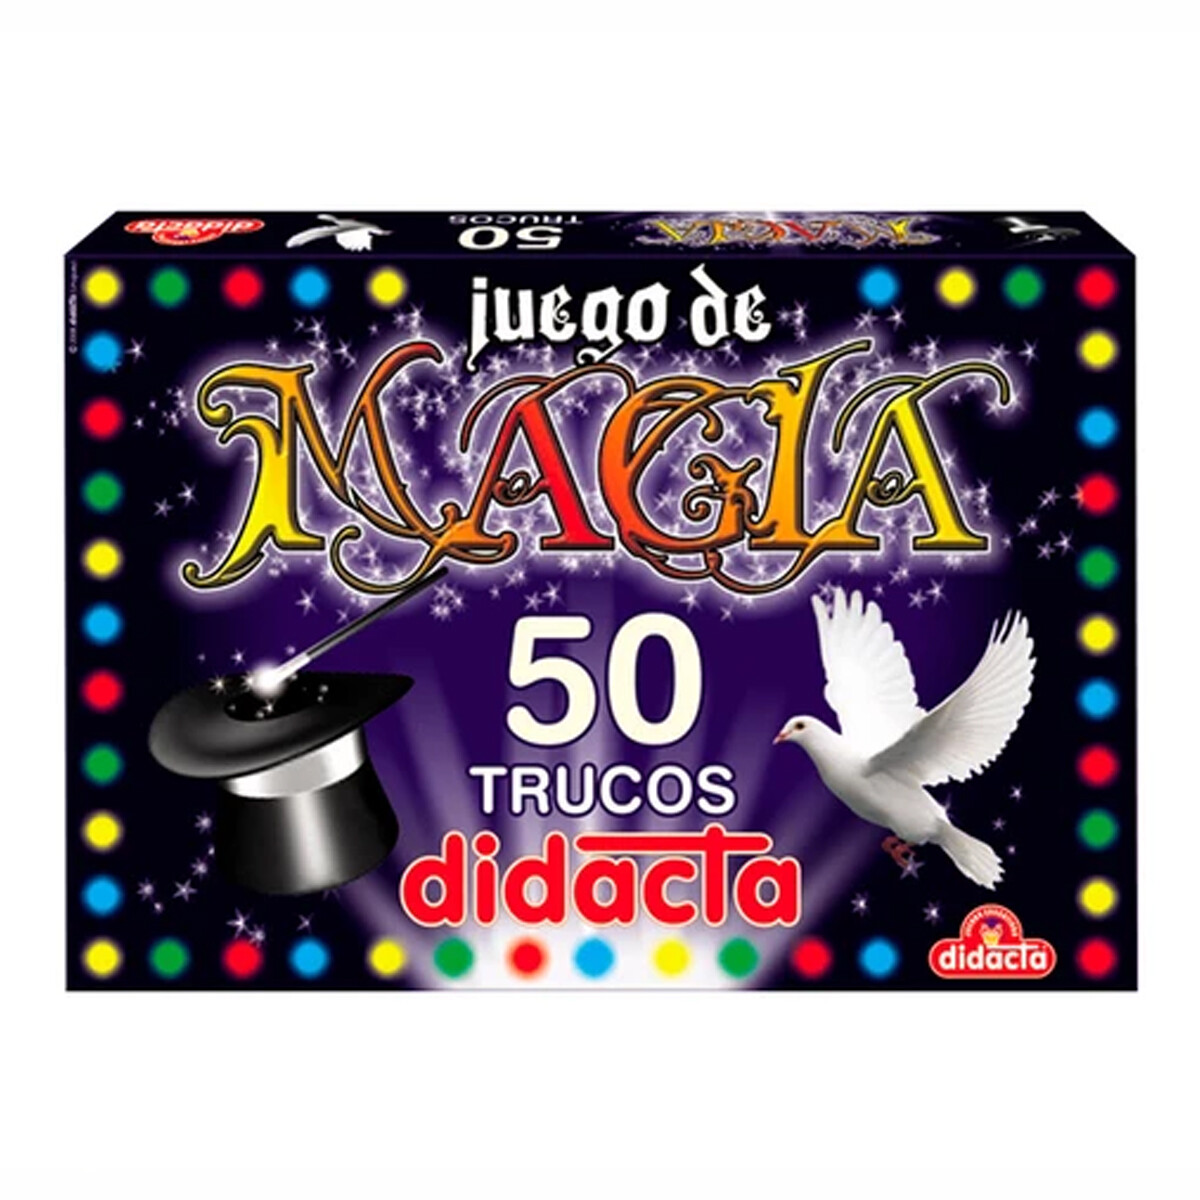 Juego De Magia 50 Trucos Para Niños Didacta Mago 